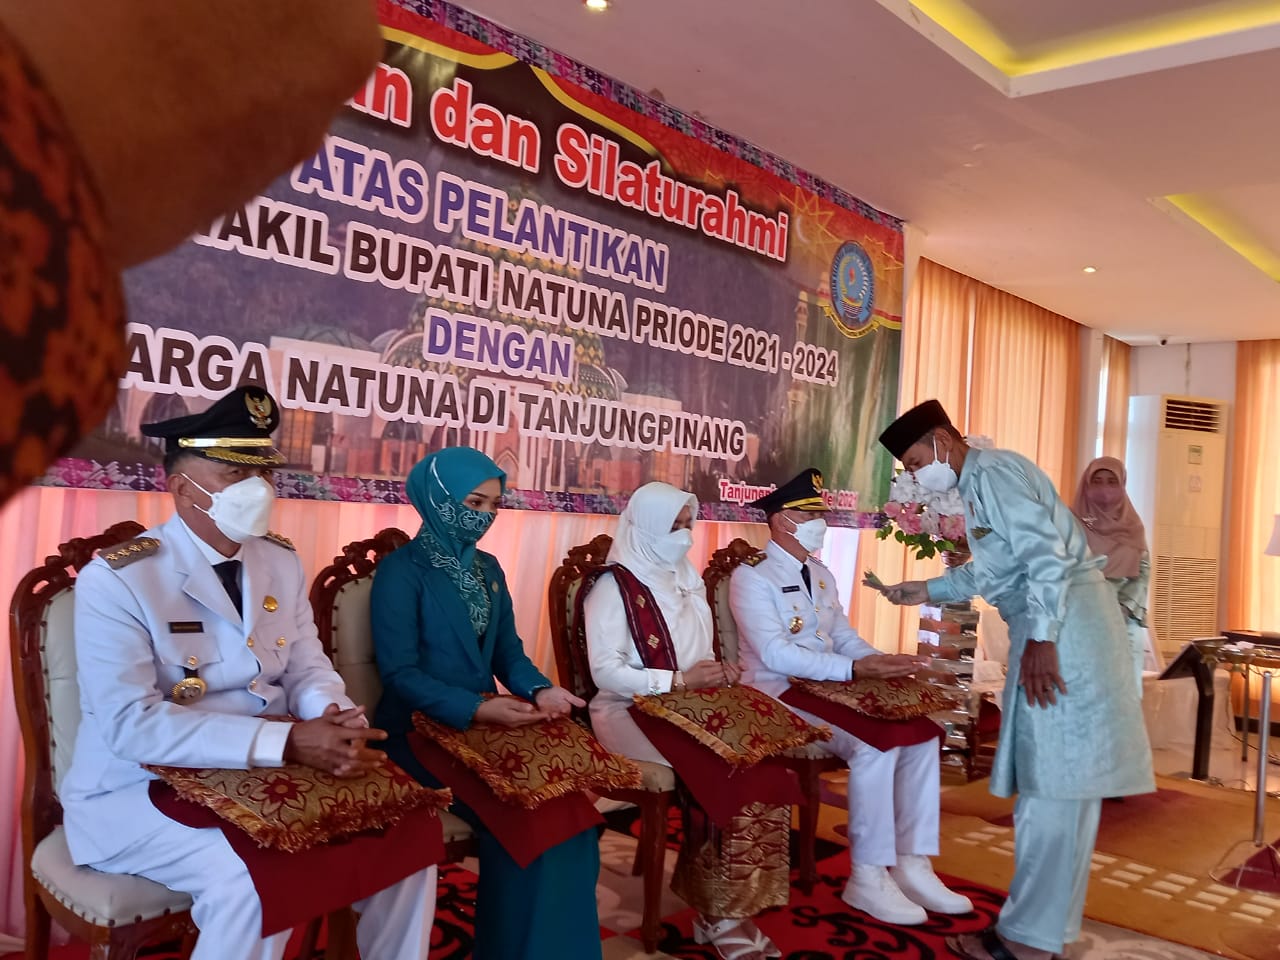 Syukuran dan Silaturahmi Atas Pelantikan Bupati dan Wakil Bupati Natuna Bersama Warga Natuna